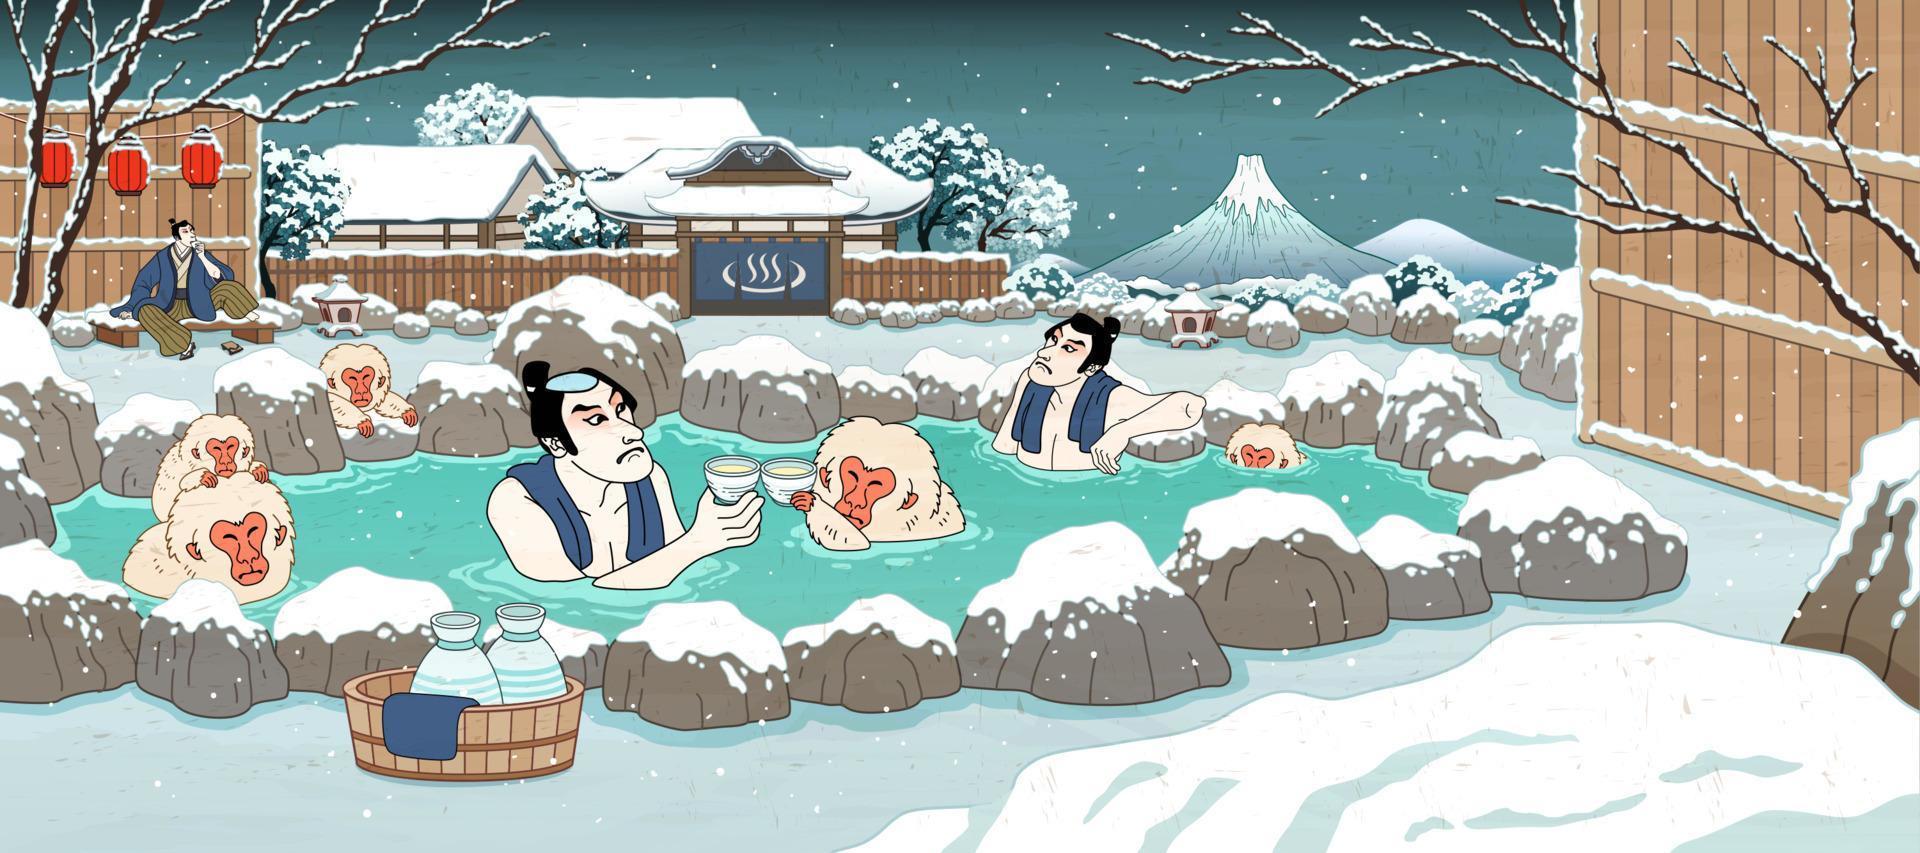 Japans ukiyo-e stijl mannen en schattig aap genieten van buitenshuis heet voorjaar en rijstwijn, mooi winter besneeuwd landschap vector